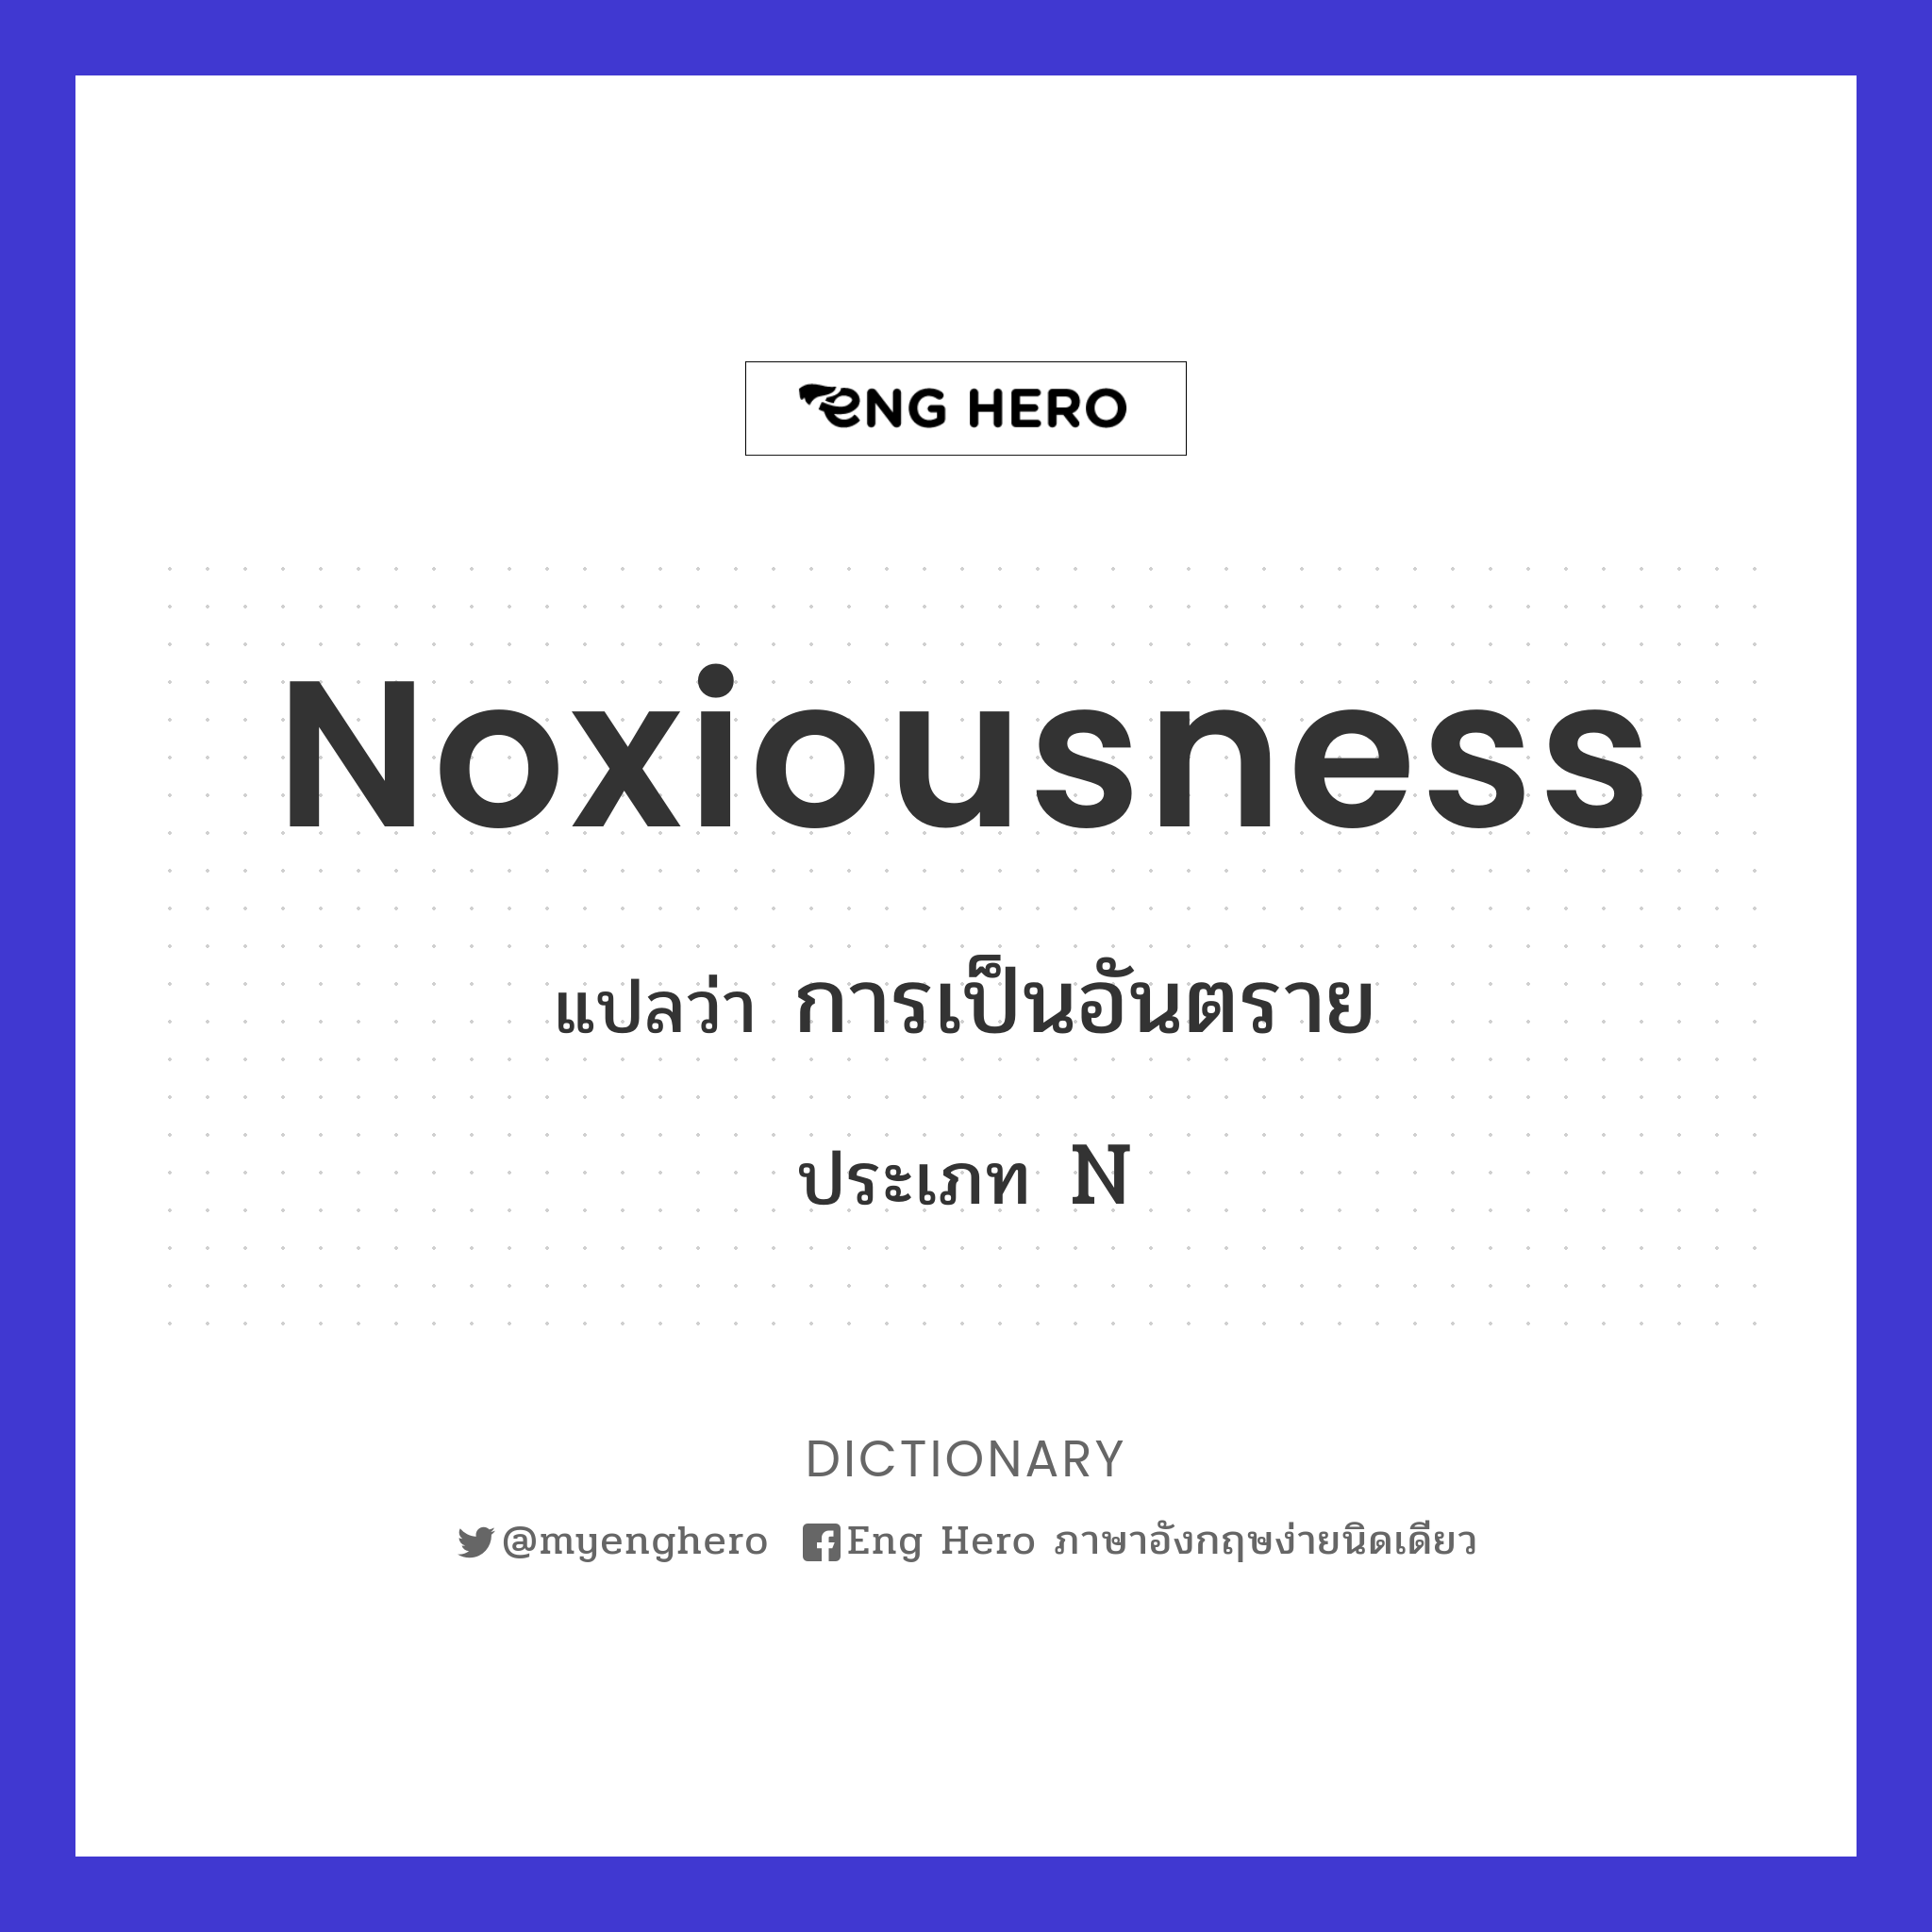 noxiousness